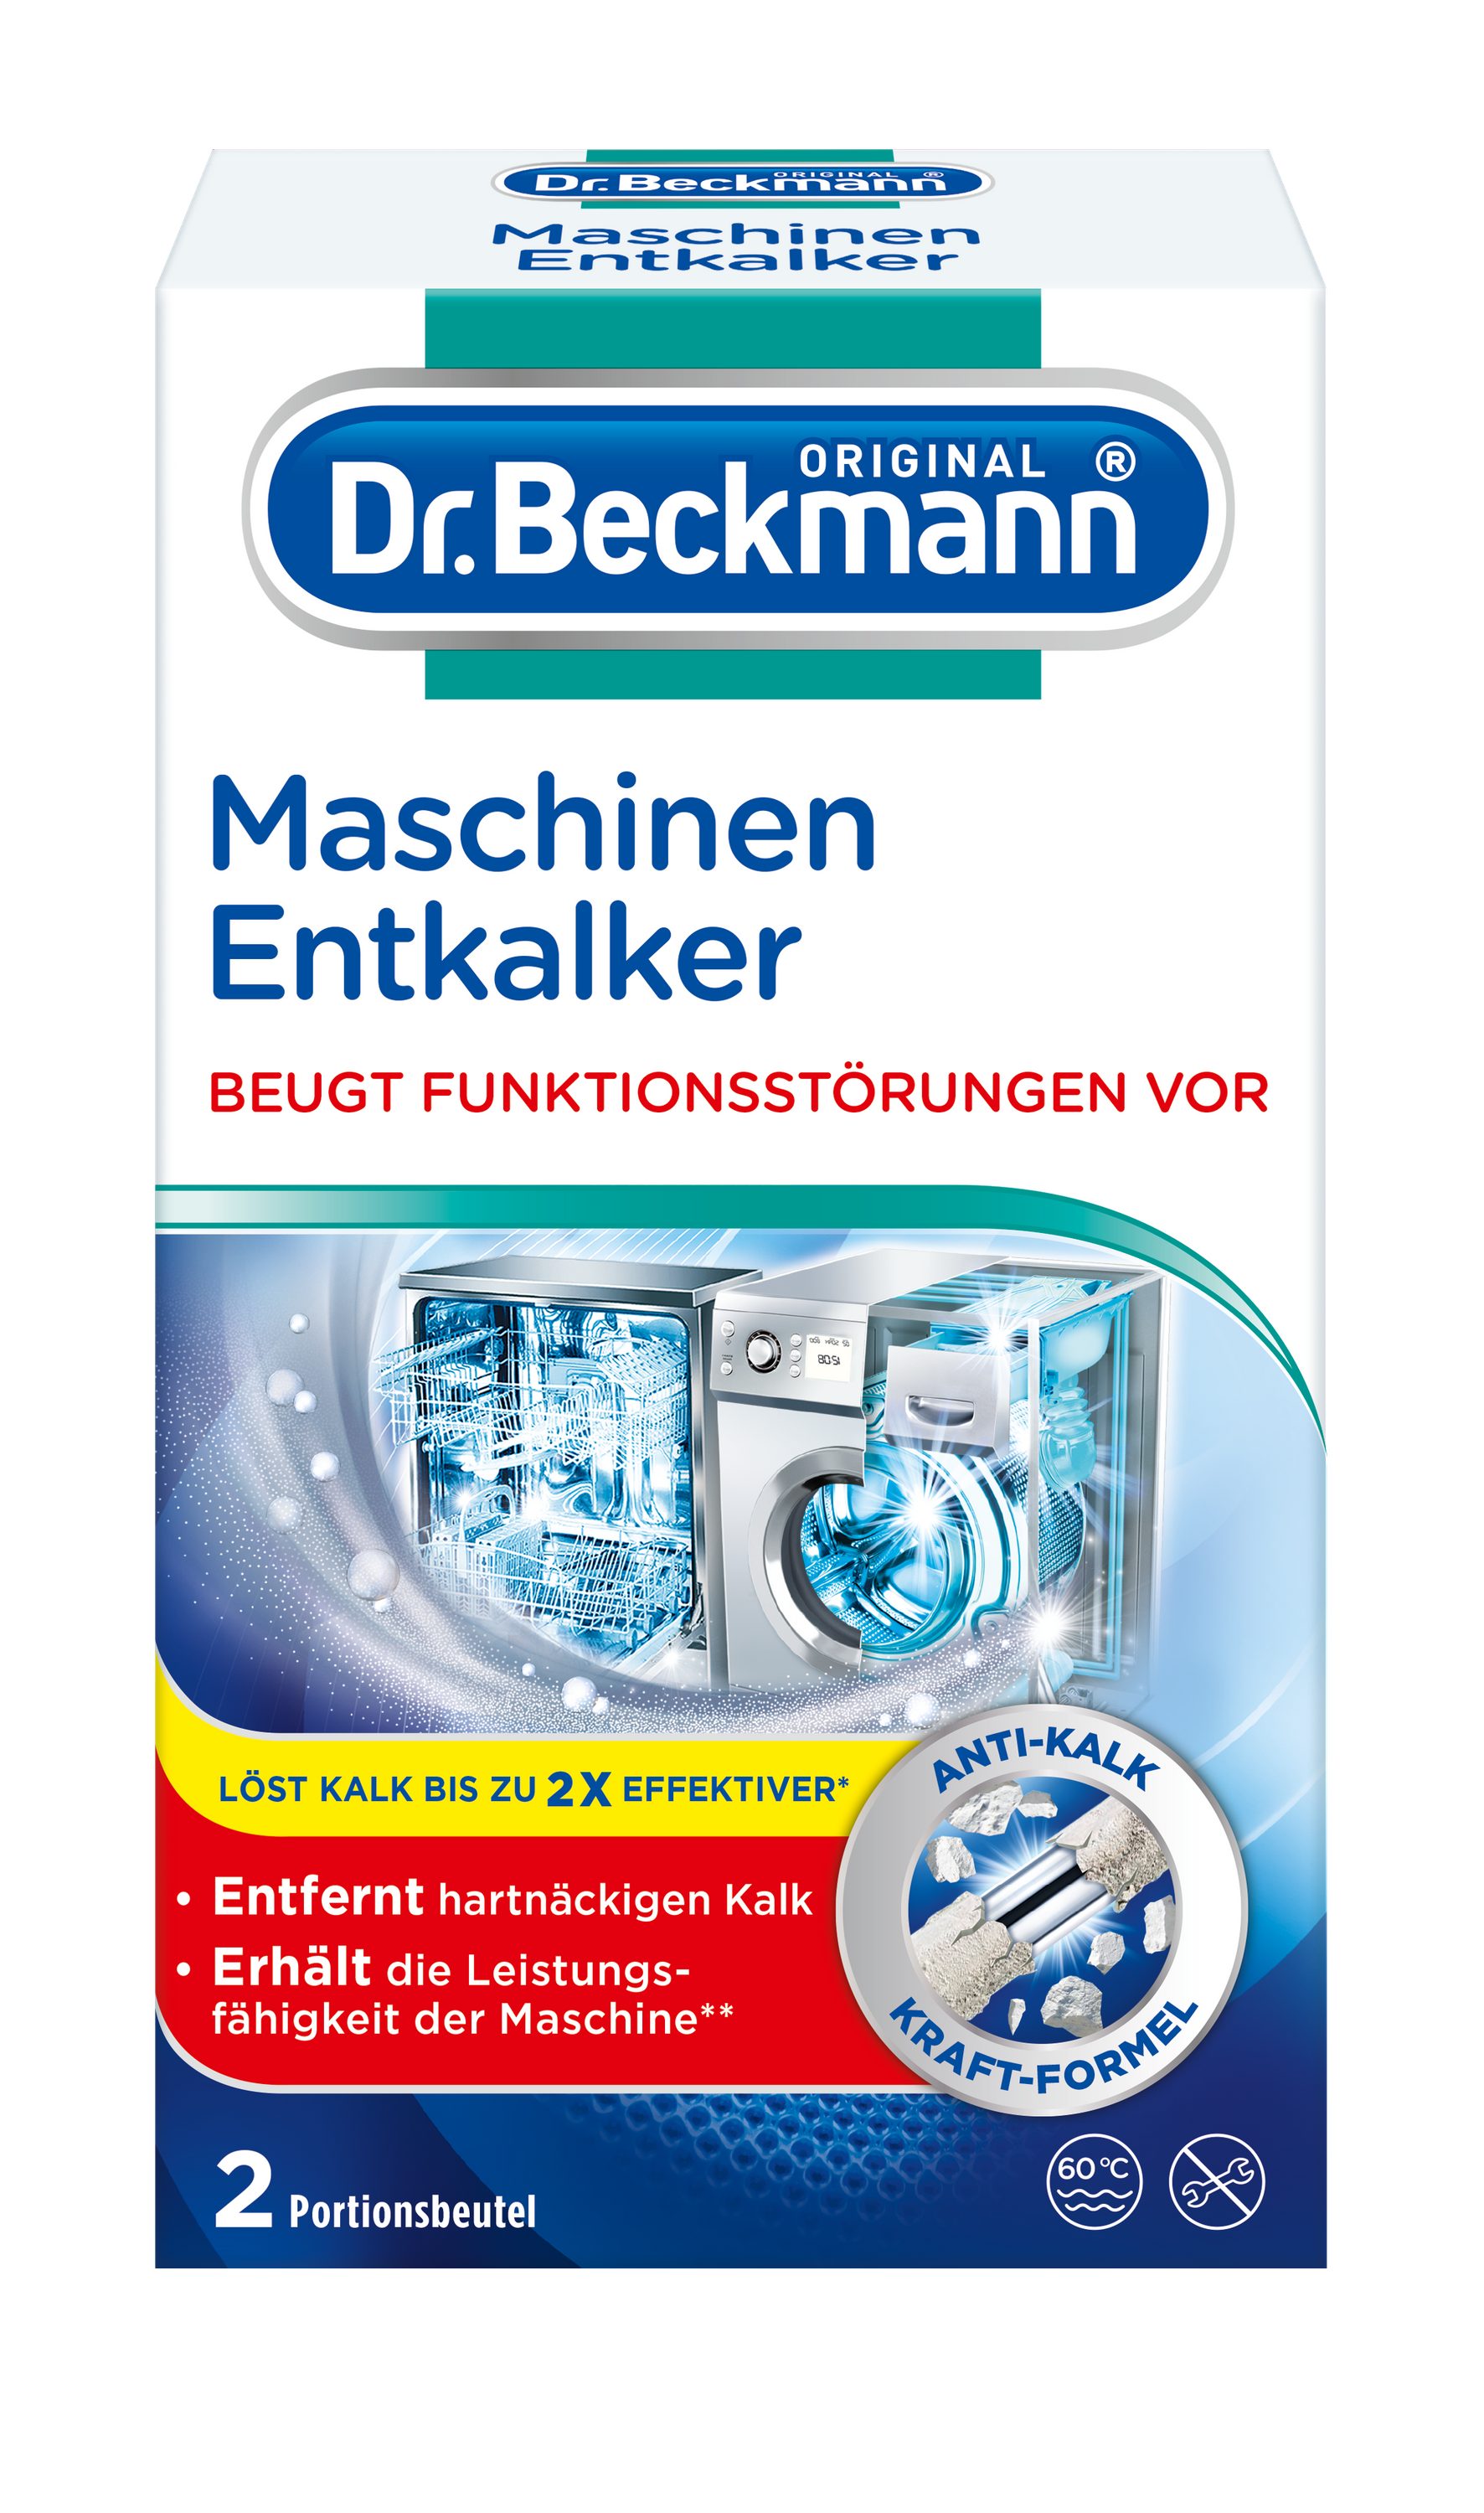 Dr. Beckmann Maschinen-Entkalker, gegen hartnäckigen Kalk, 2x 50 g Entkalker